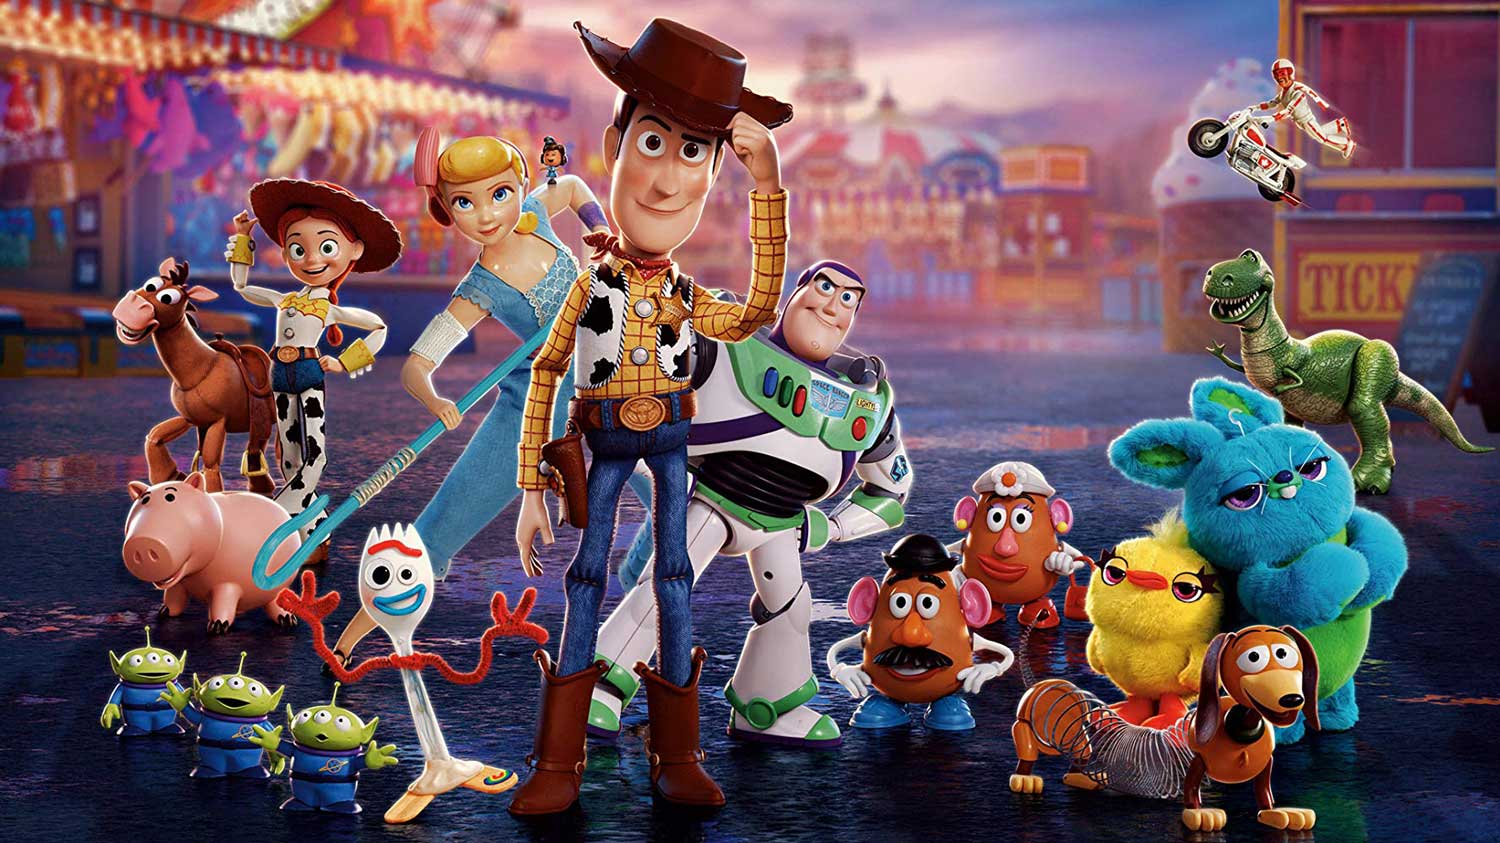 Todos los personajes de Toy Story 4